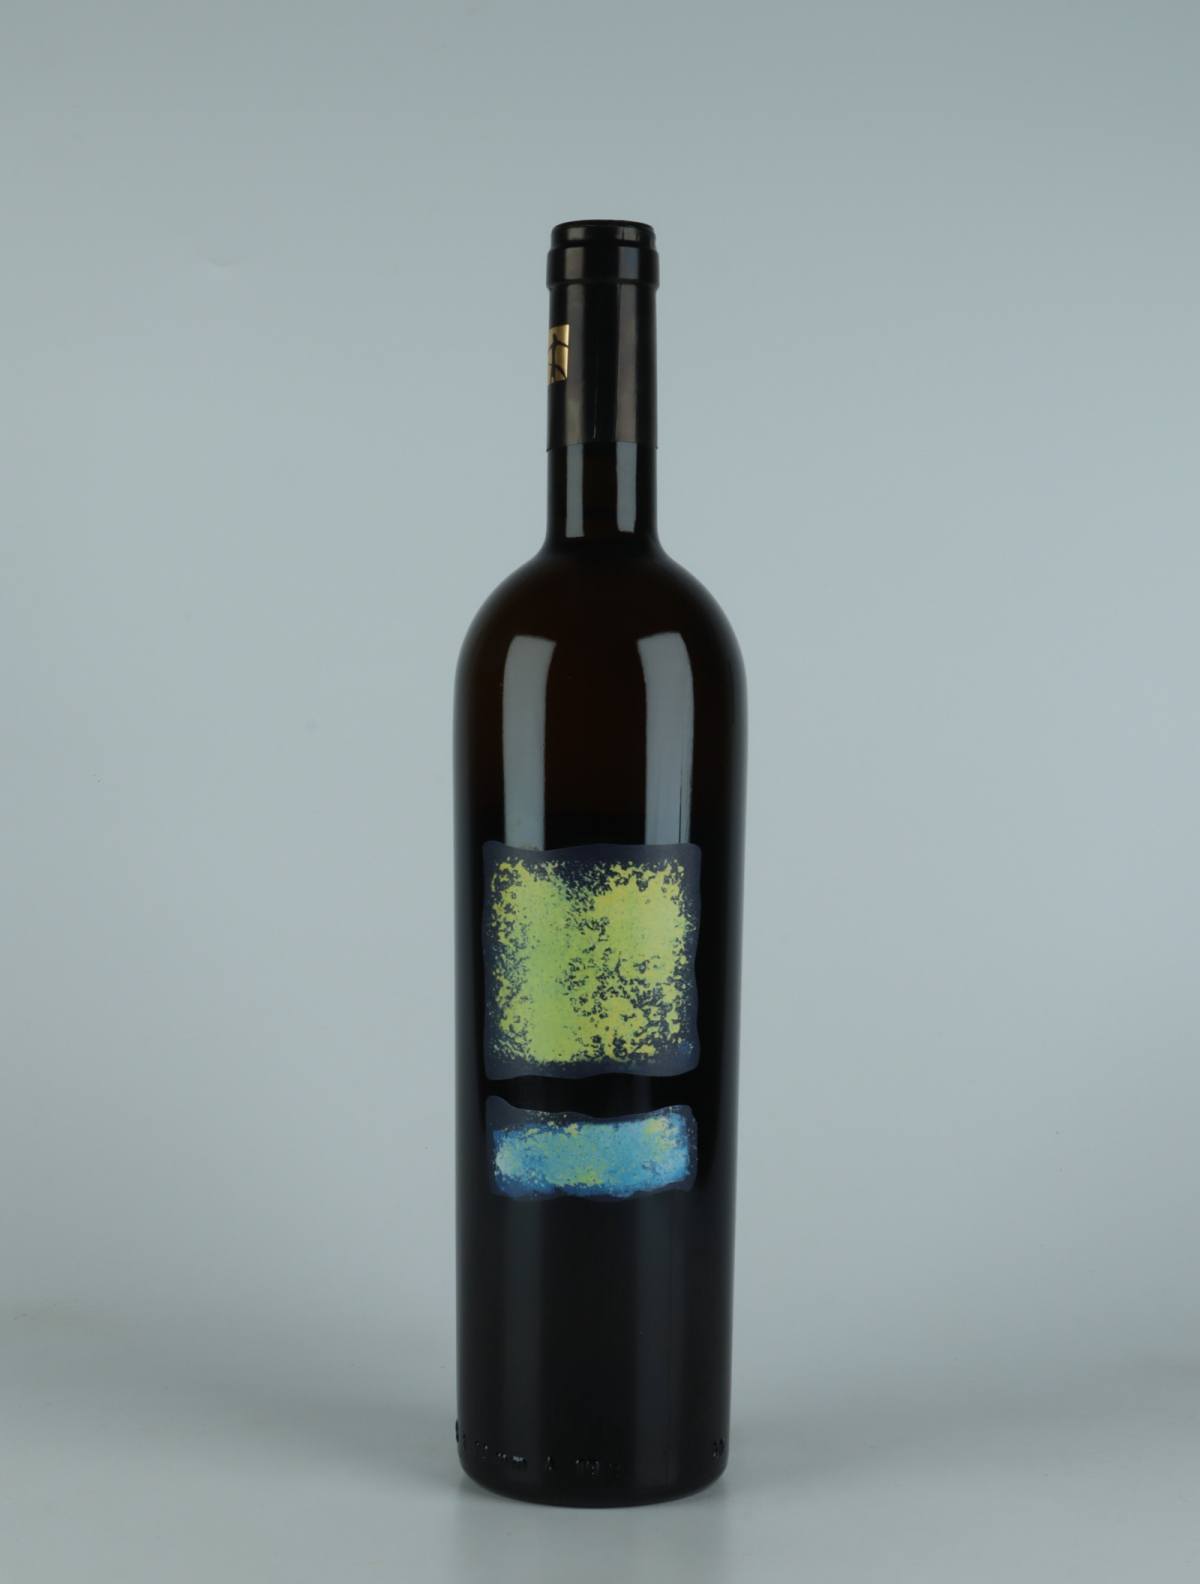 En flaske 2019 VB1 Orange vin fra Tenuta Selvadolce, Ligurien i Italien